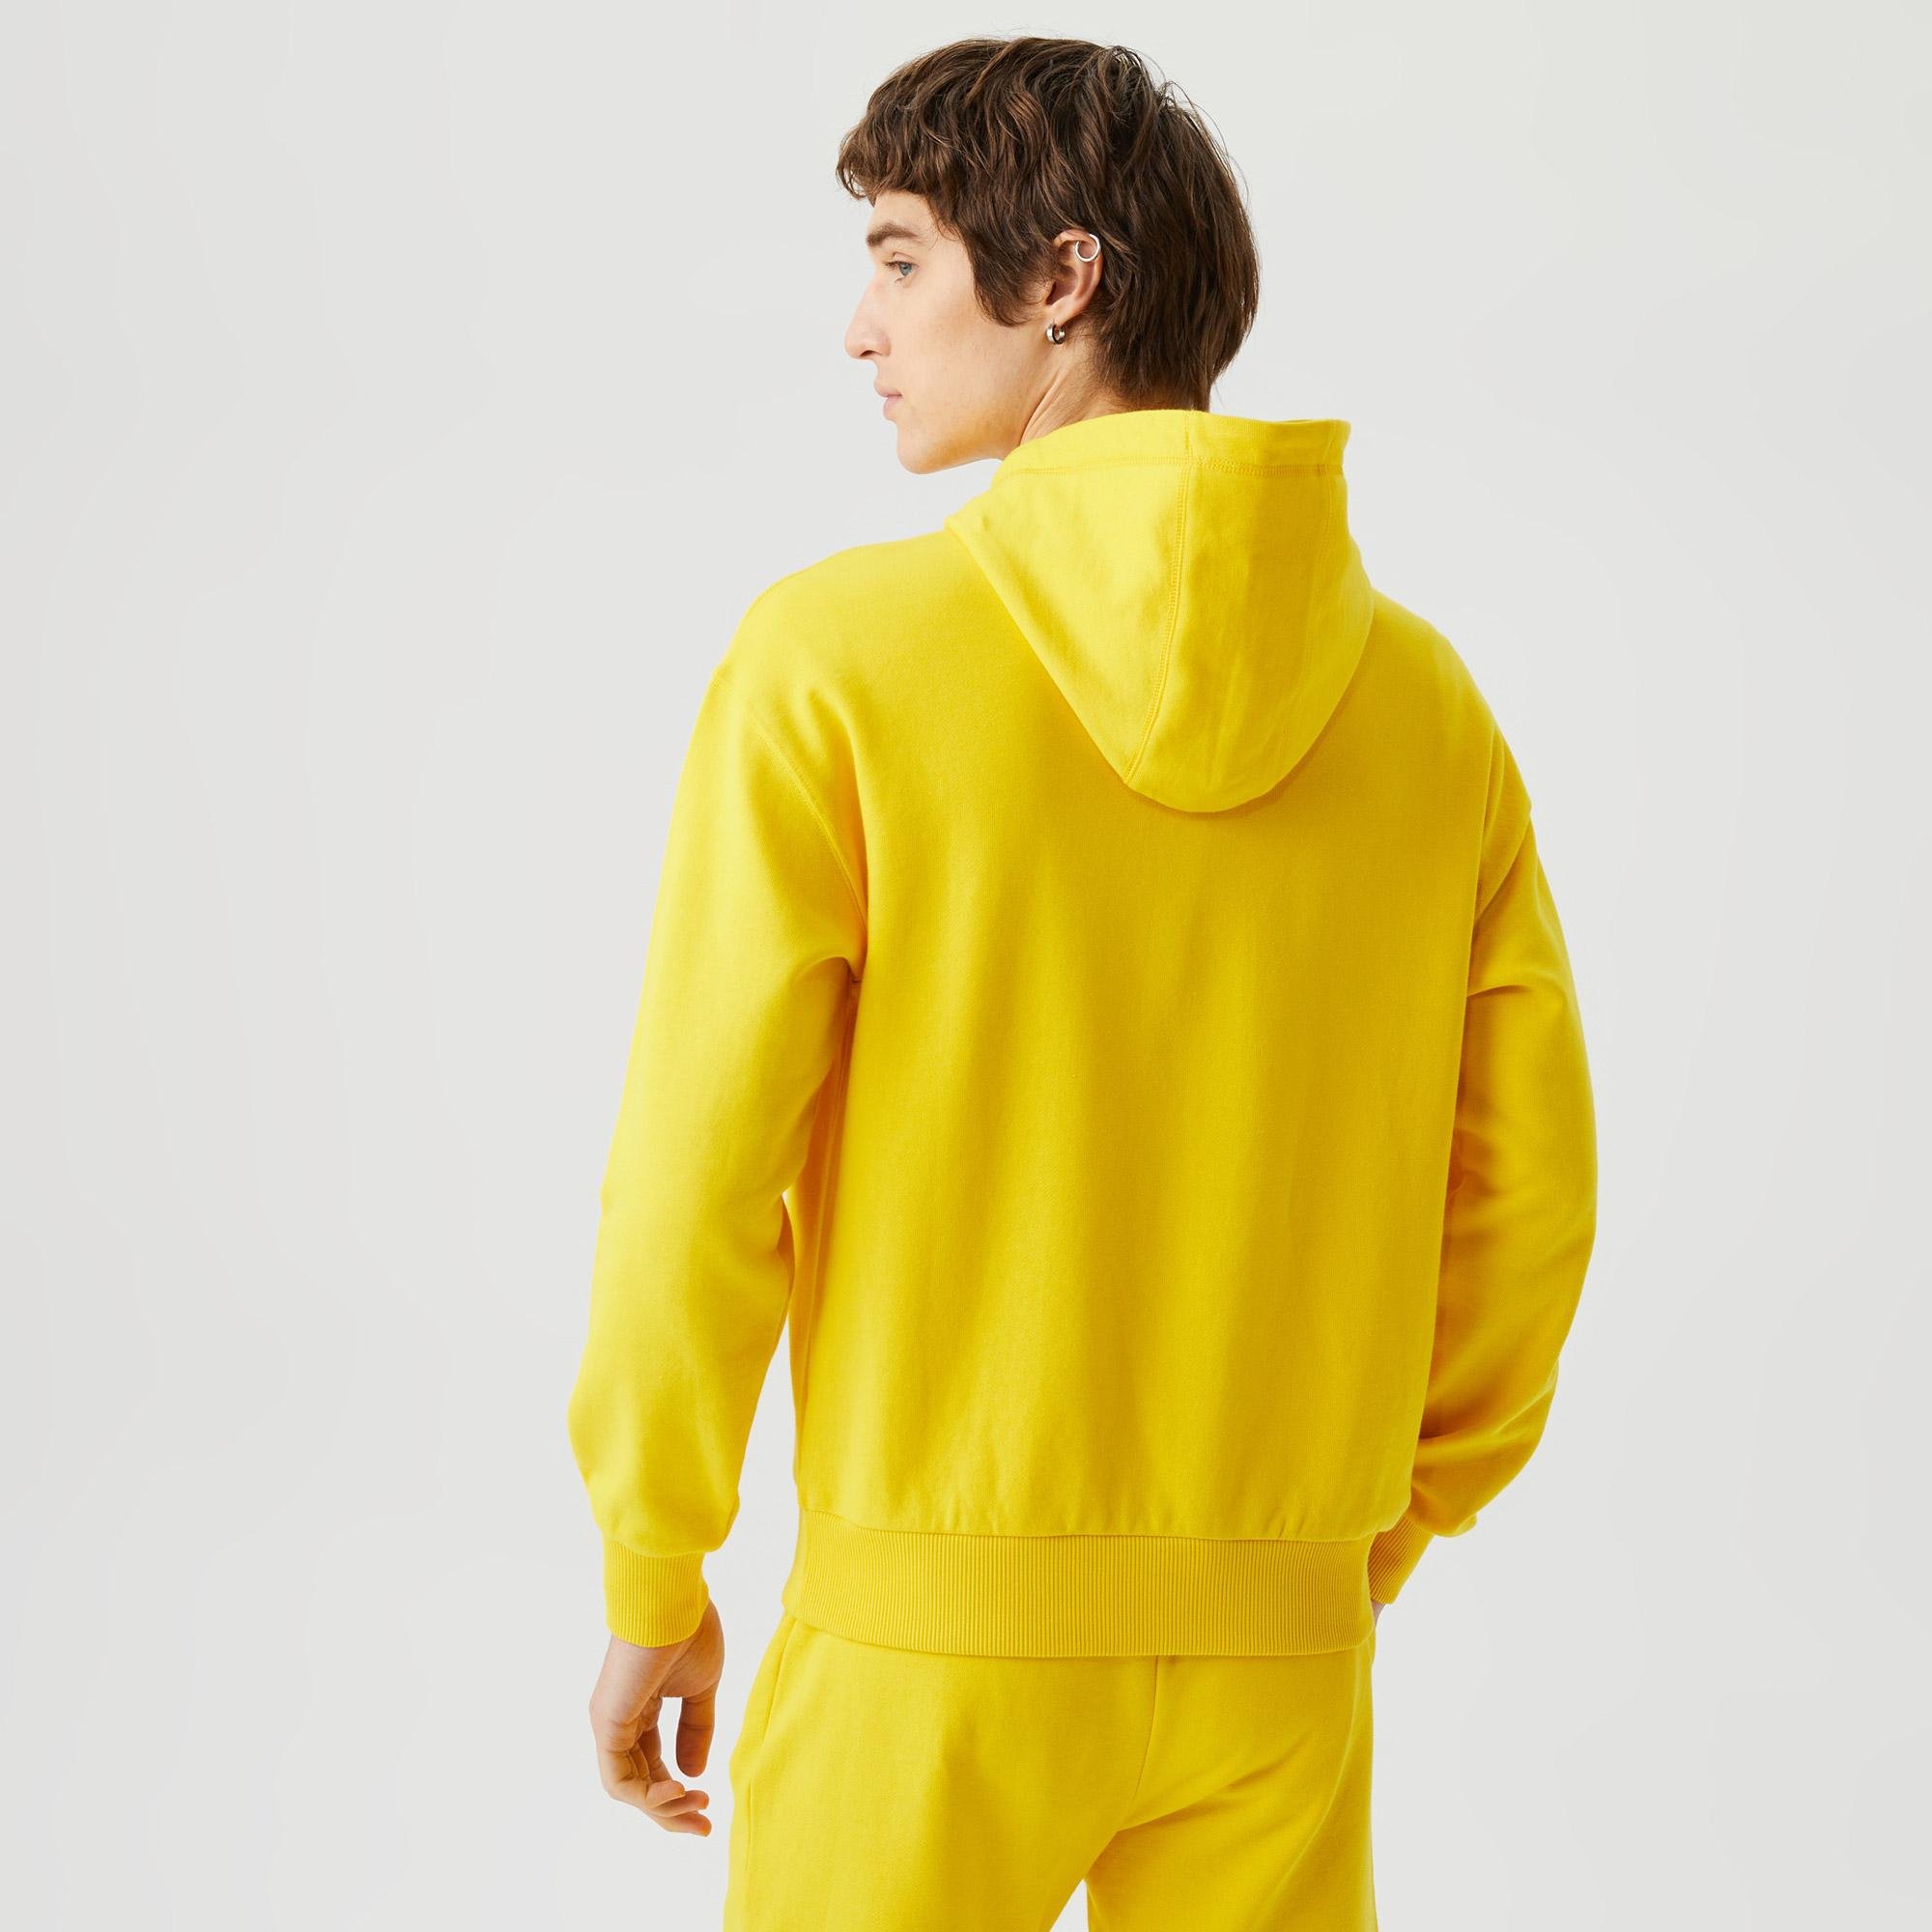 Lacoste Unisex Relaxed Fit Kapüşonlu Baskılı Sarı Sweatshirt. 3